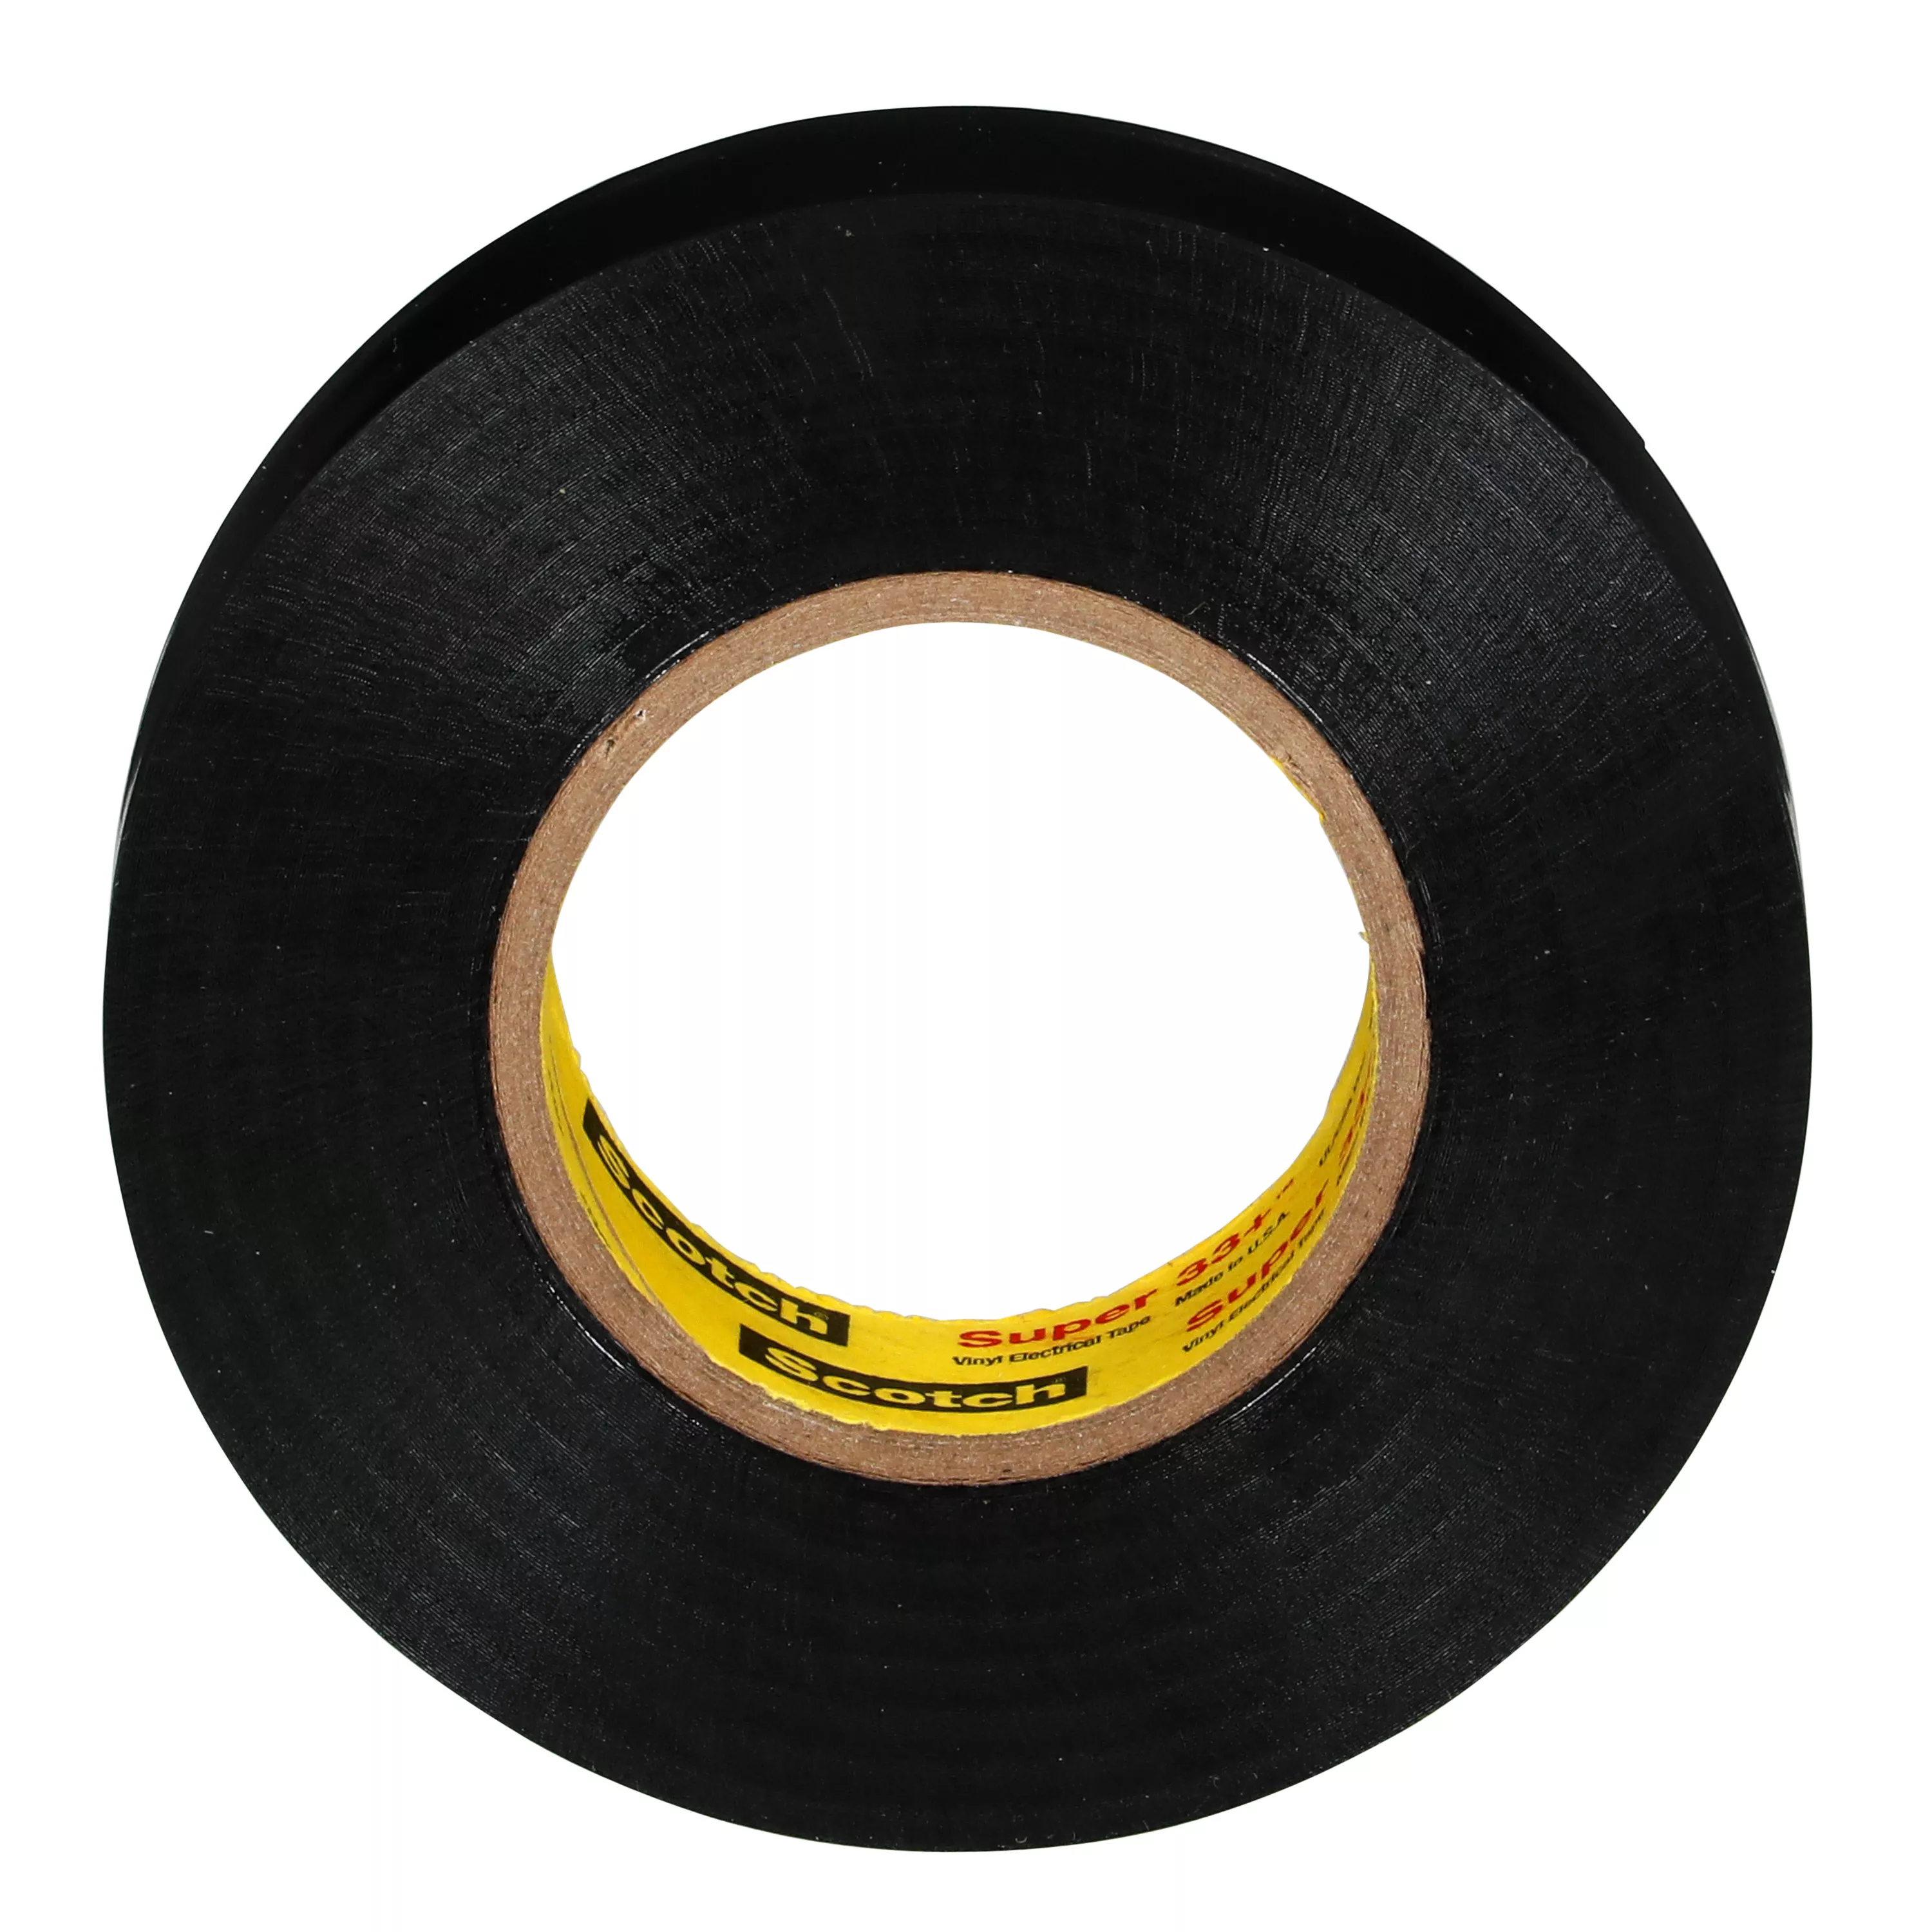 SKU 7010398370 | Scotch® Super 33+ Vinyl Electrical Tape